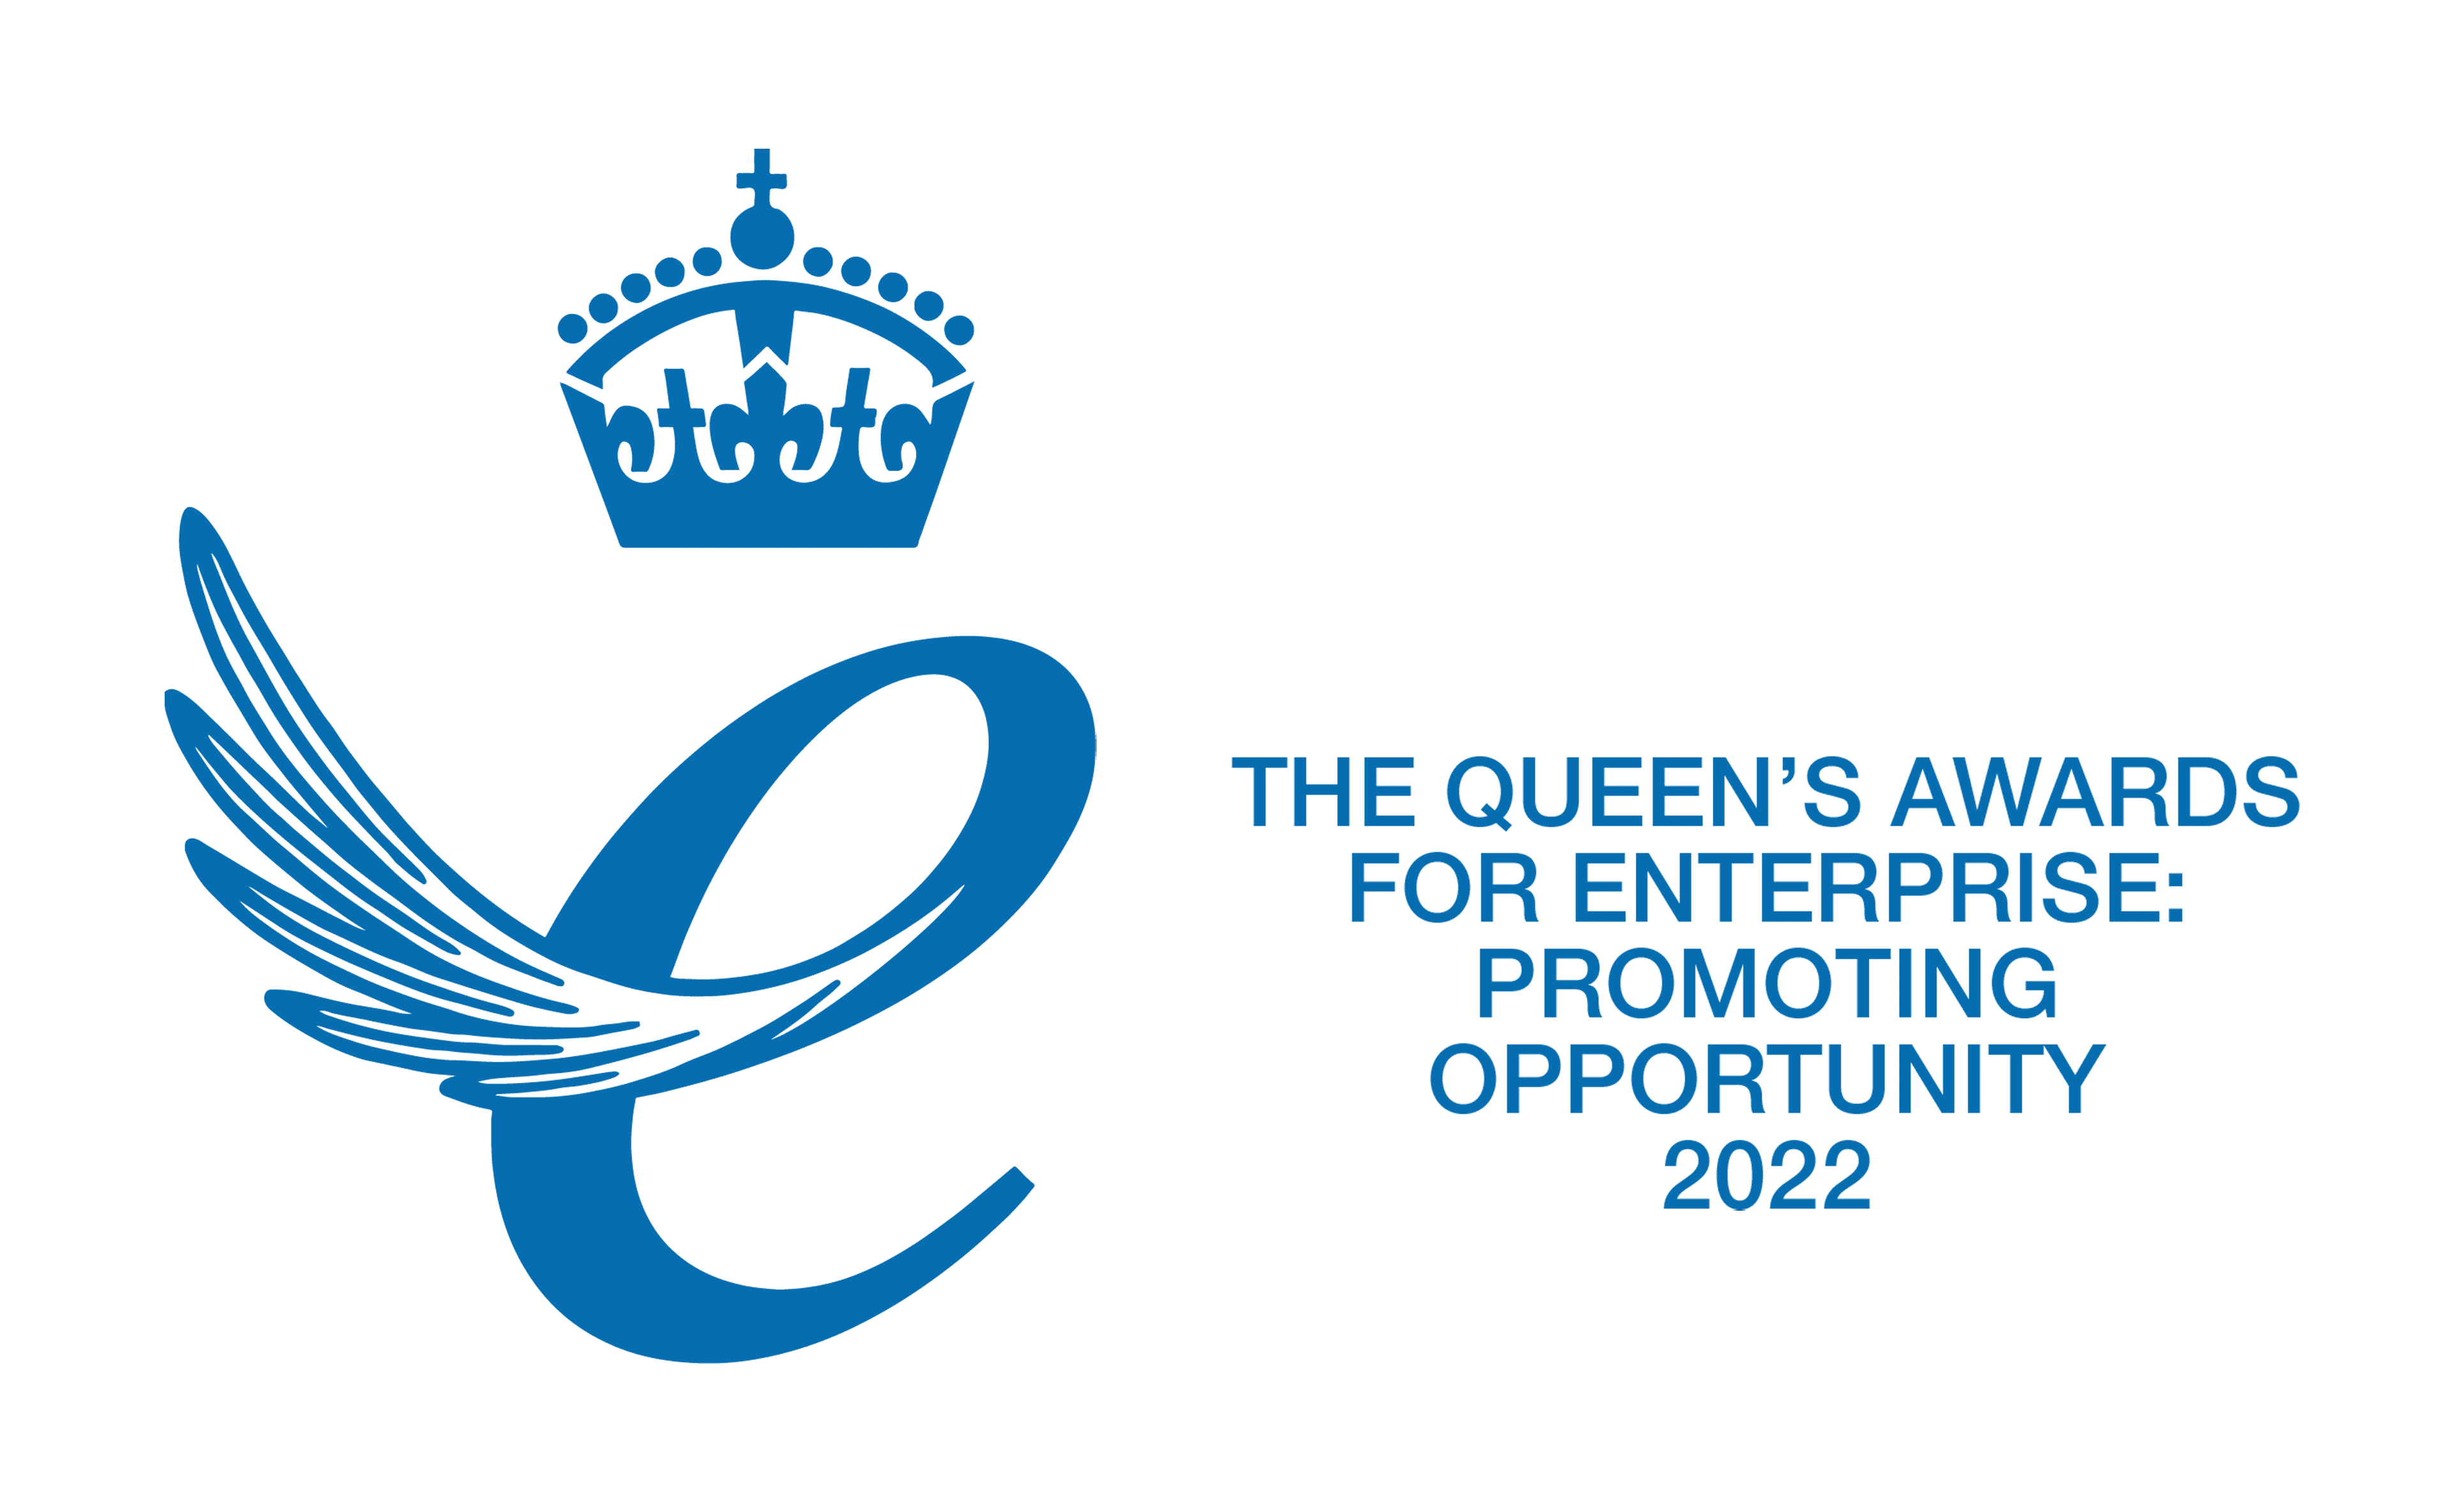 The Queen's awards for enterprise